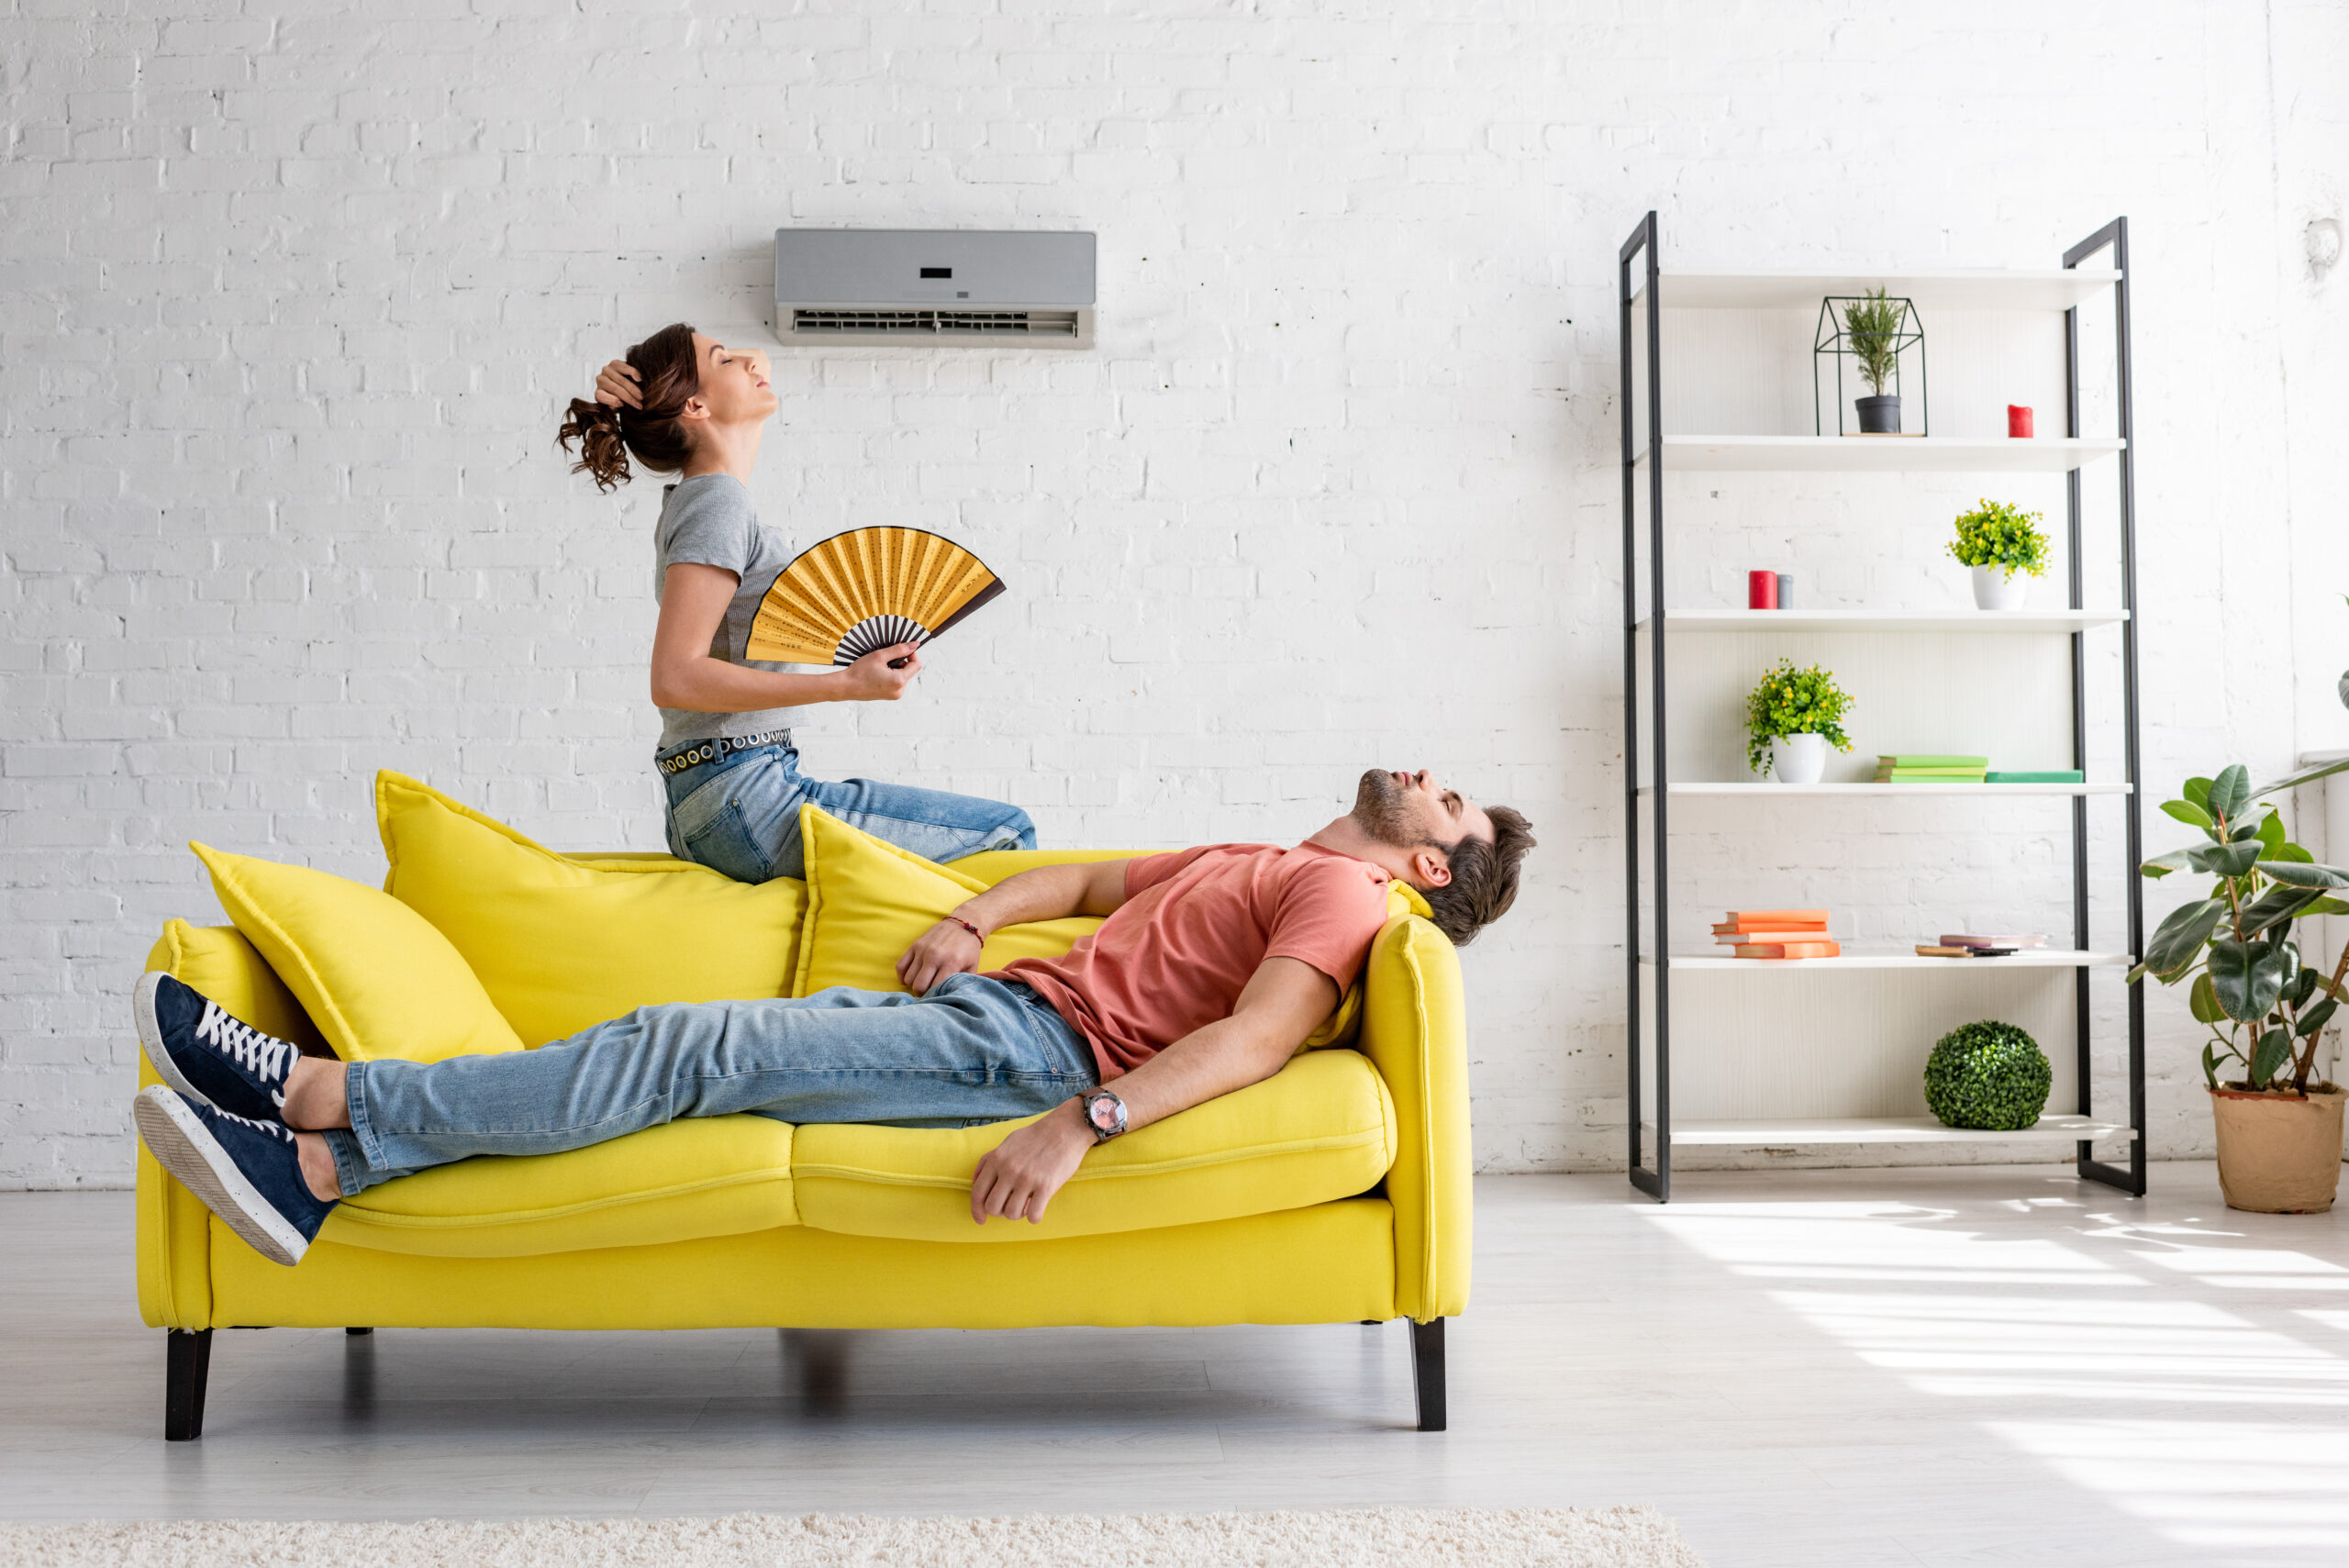 homme épuisé allongé sur un canapé jaune sous un climatiseur près d'une femme avec un ventilateur à main